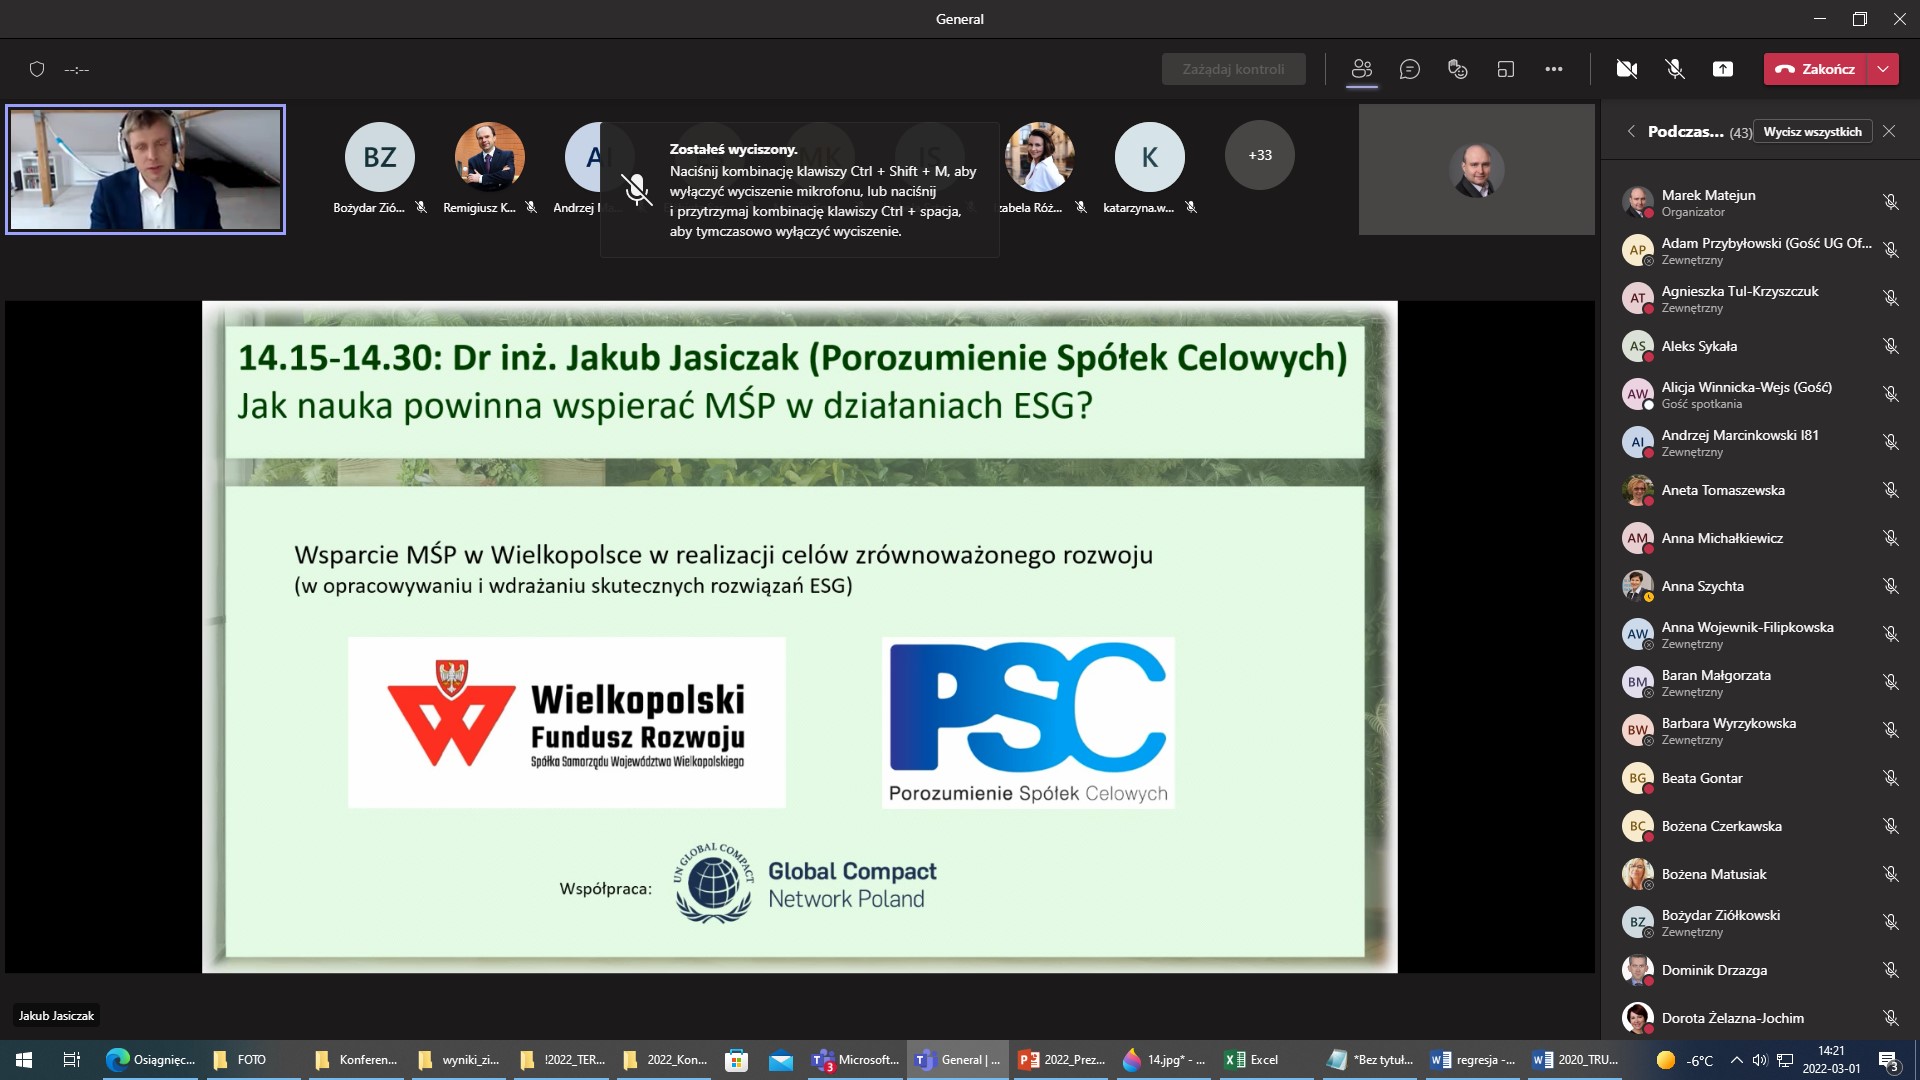 Zrzut z ekranu aplikacji MS Teams Ogólnopolskiej Konferencji Naukowej pt. „Uczelnie wyższe wobec wyzwań zrównoważonego rozwoju”, Wydział Zarządzania, Uniwersytet Łódzki, 01.03.2022